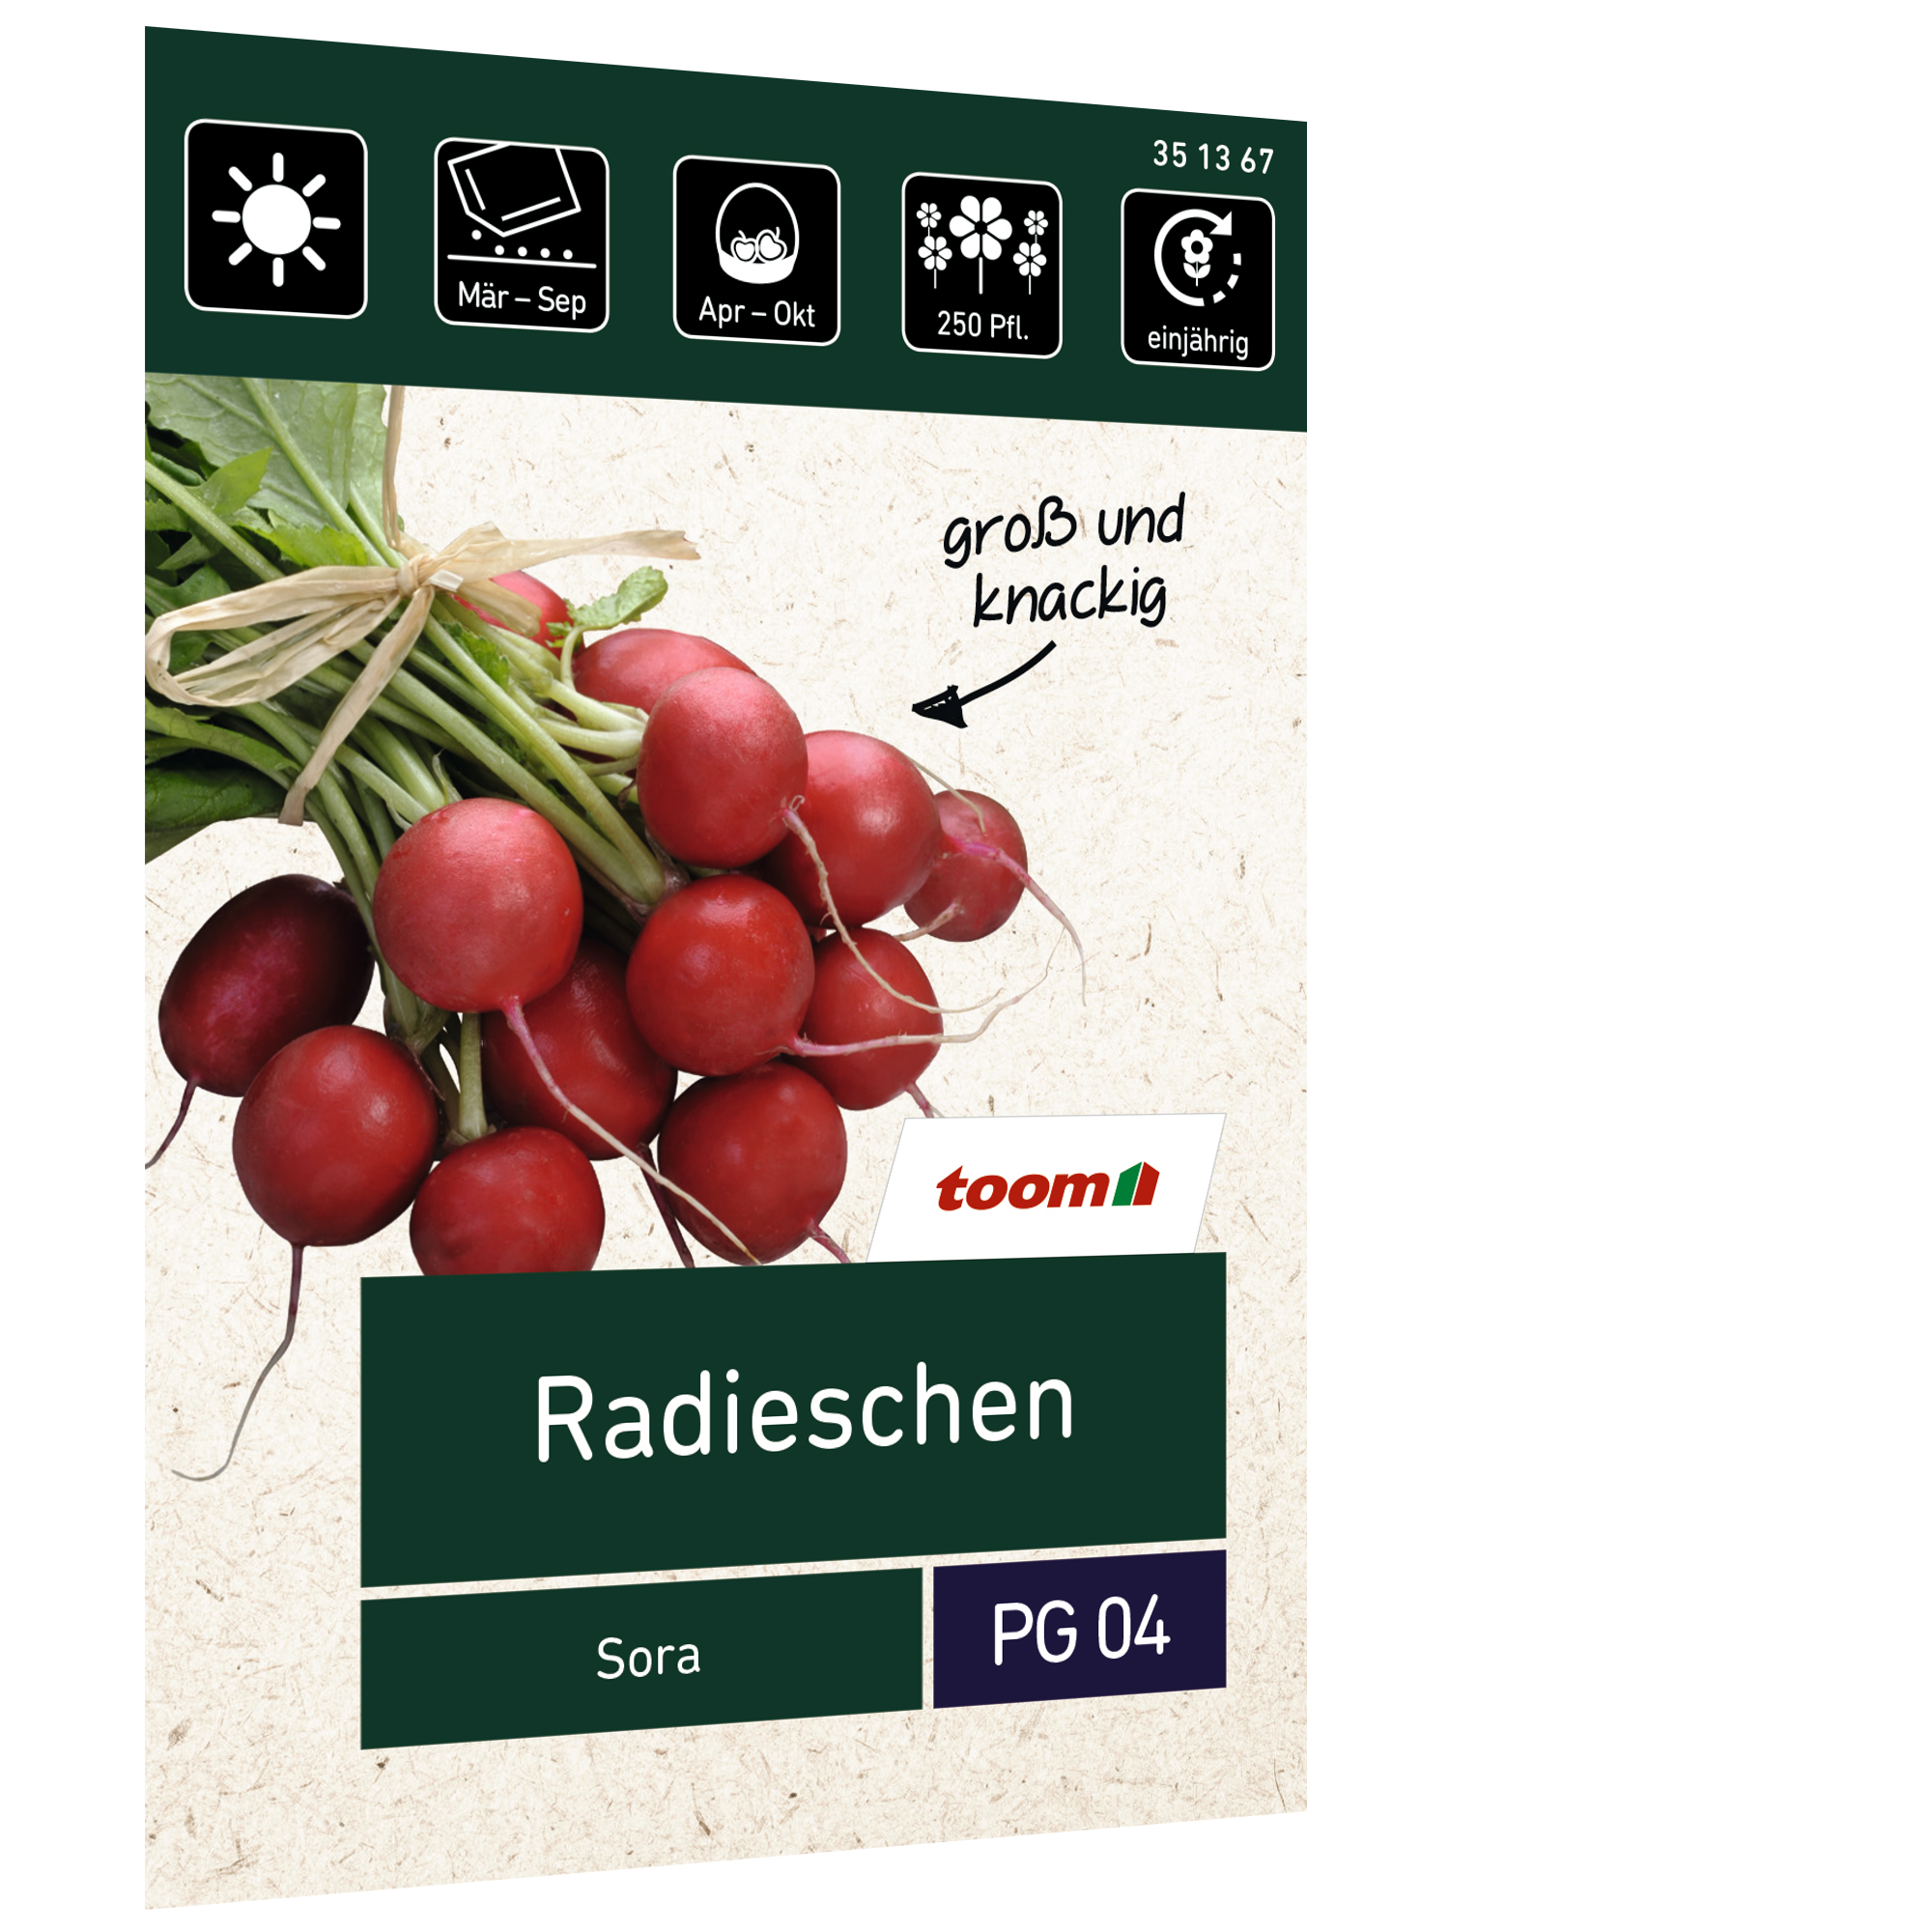 Radieschen 'Sora' + product picture